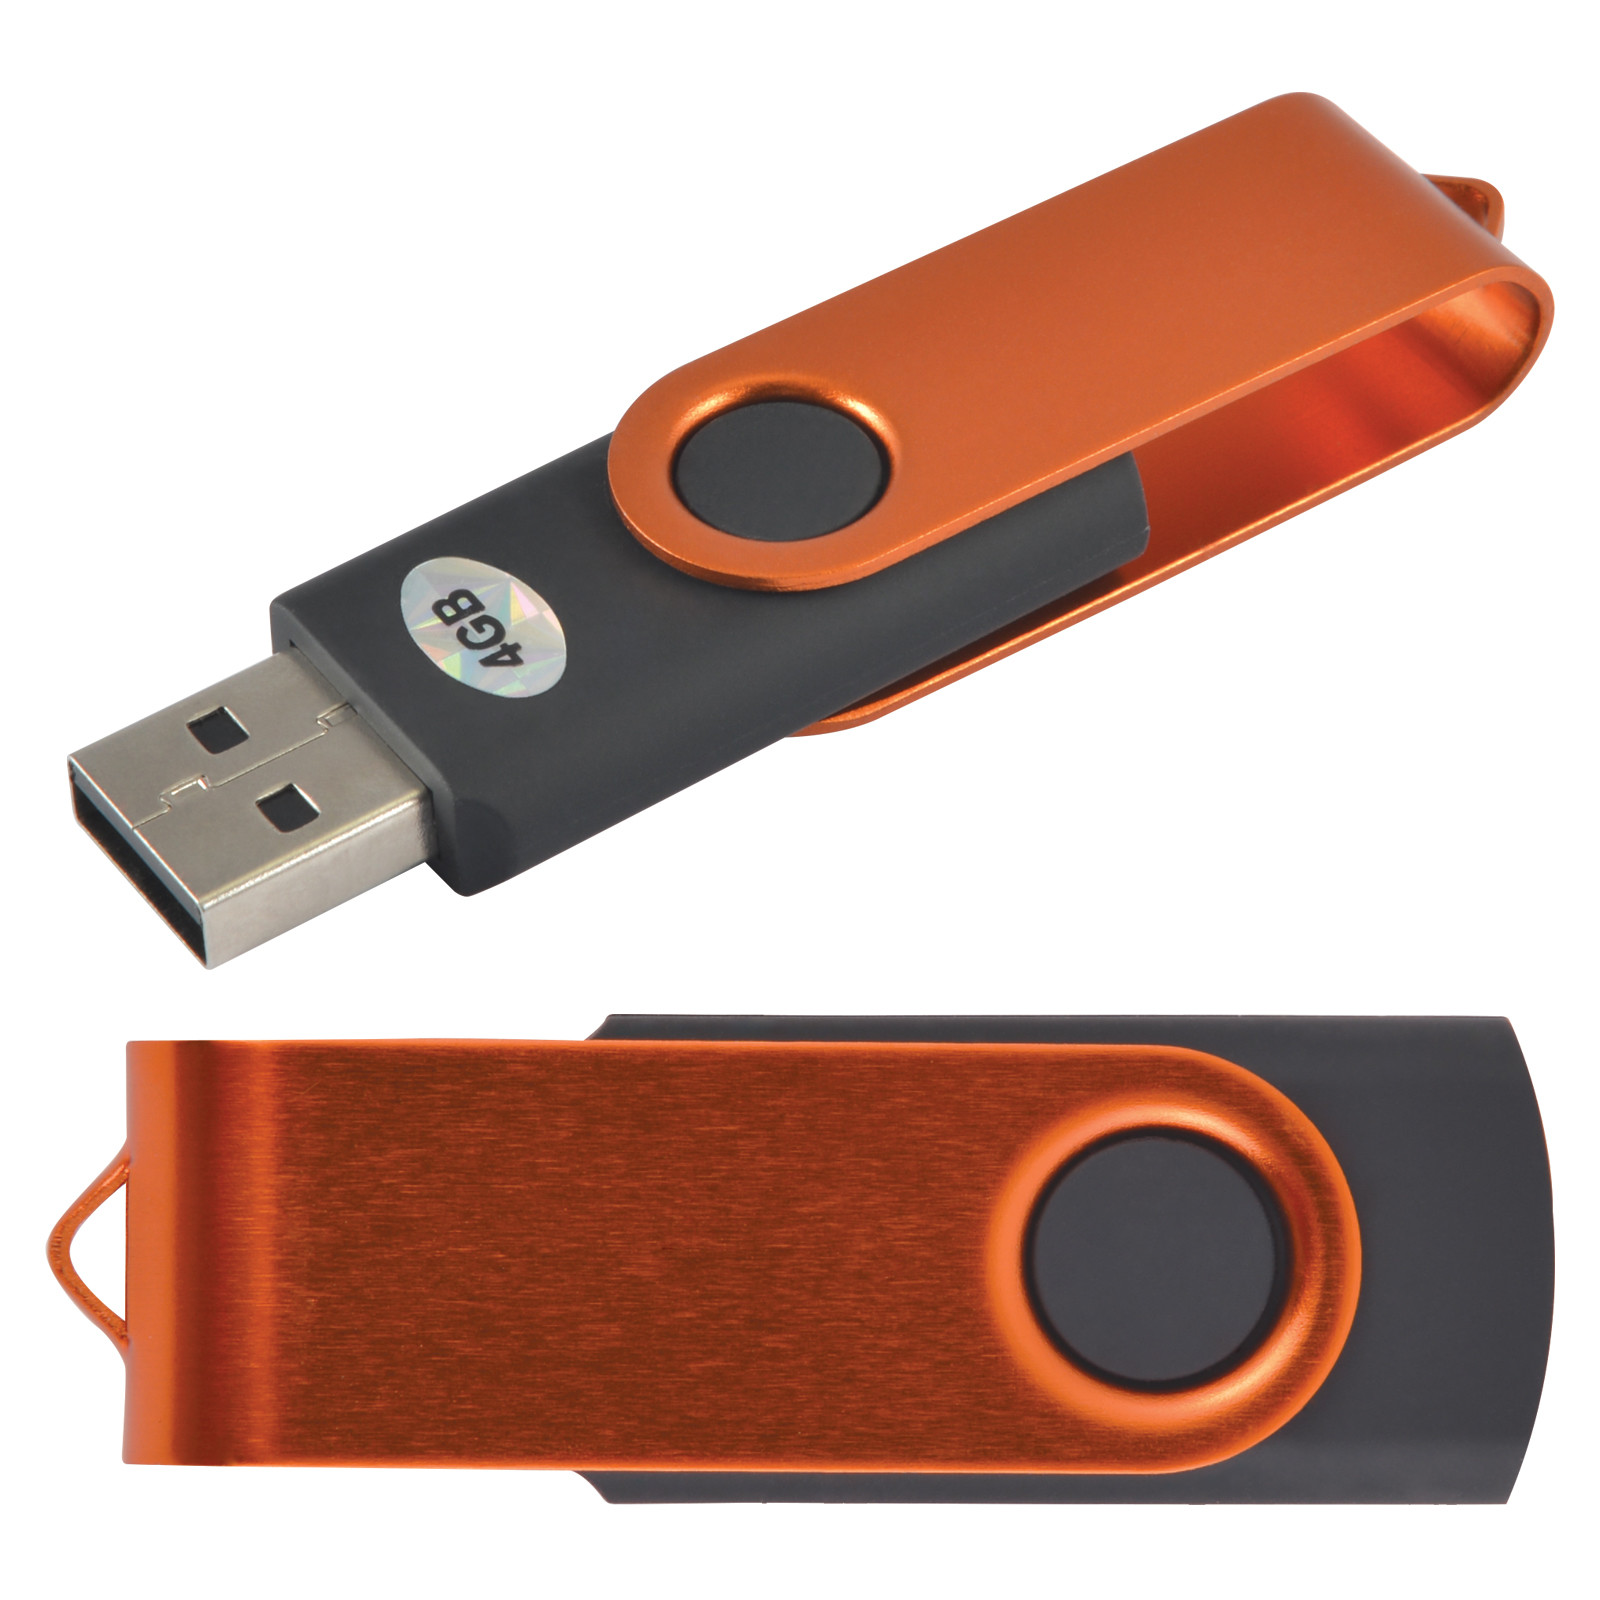 LL9600 USB Swivel Flash Drive